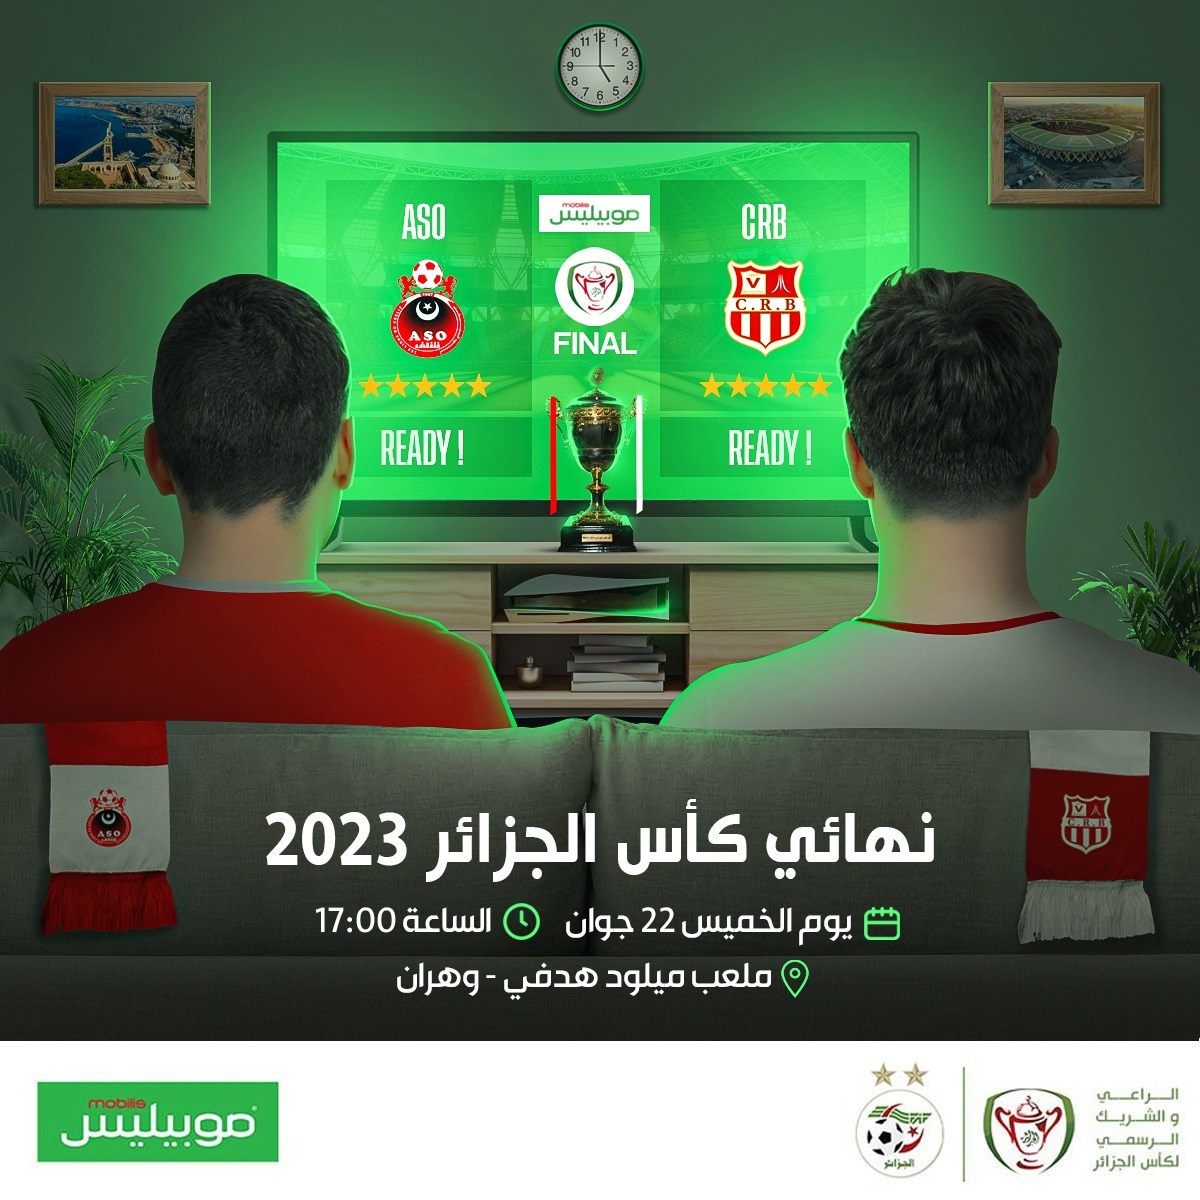 موبيليس الشريك الرسمي لنهائي كأس الجزائر موبيليس 2023